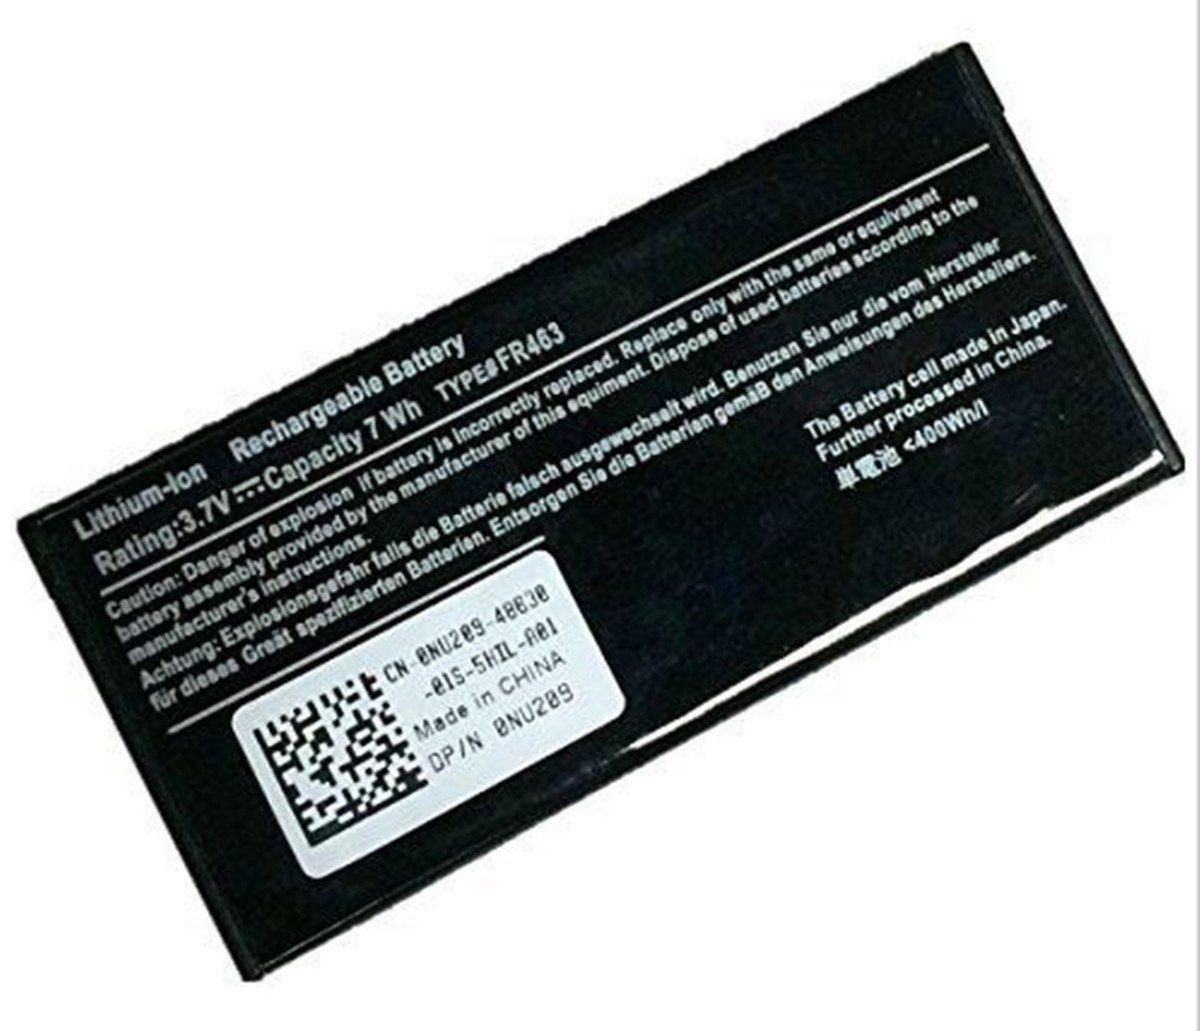 batterie Dell PowerEdge 2900, batteries Dell PowerEdge 2900